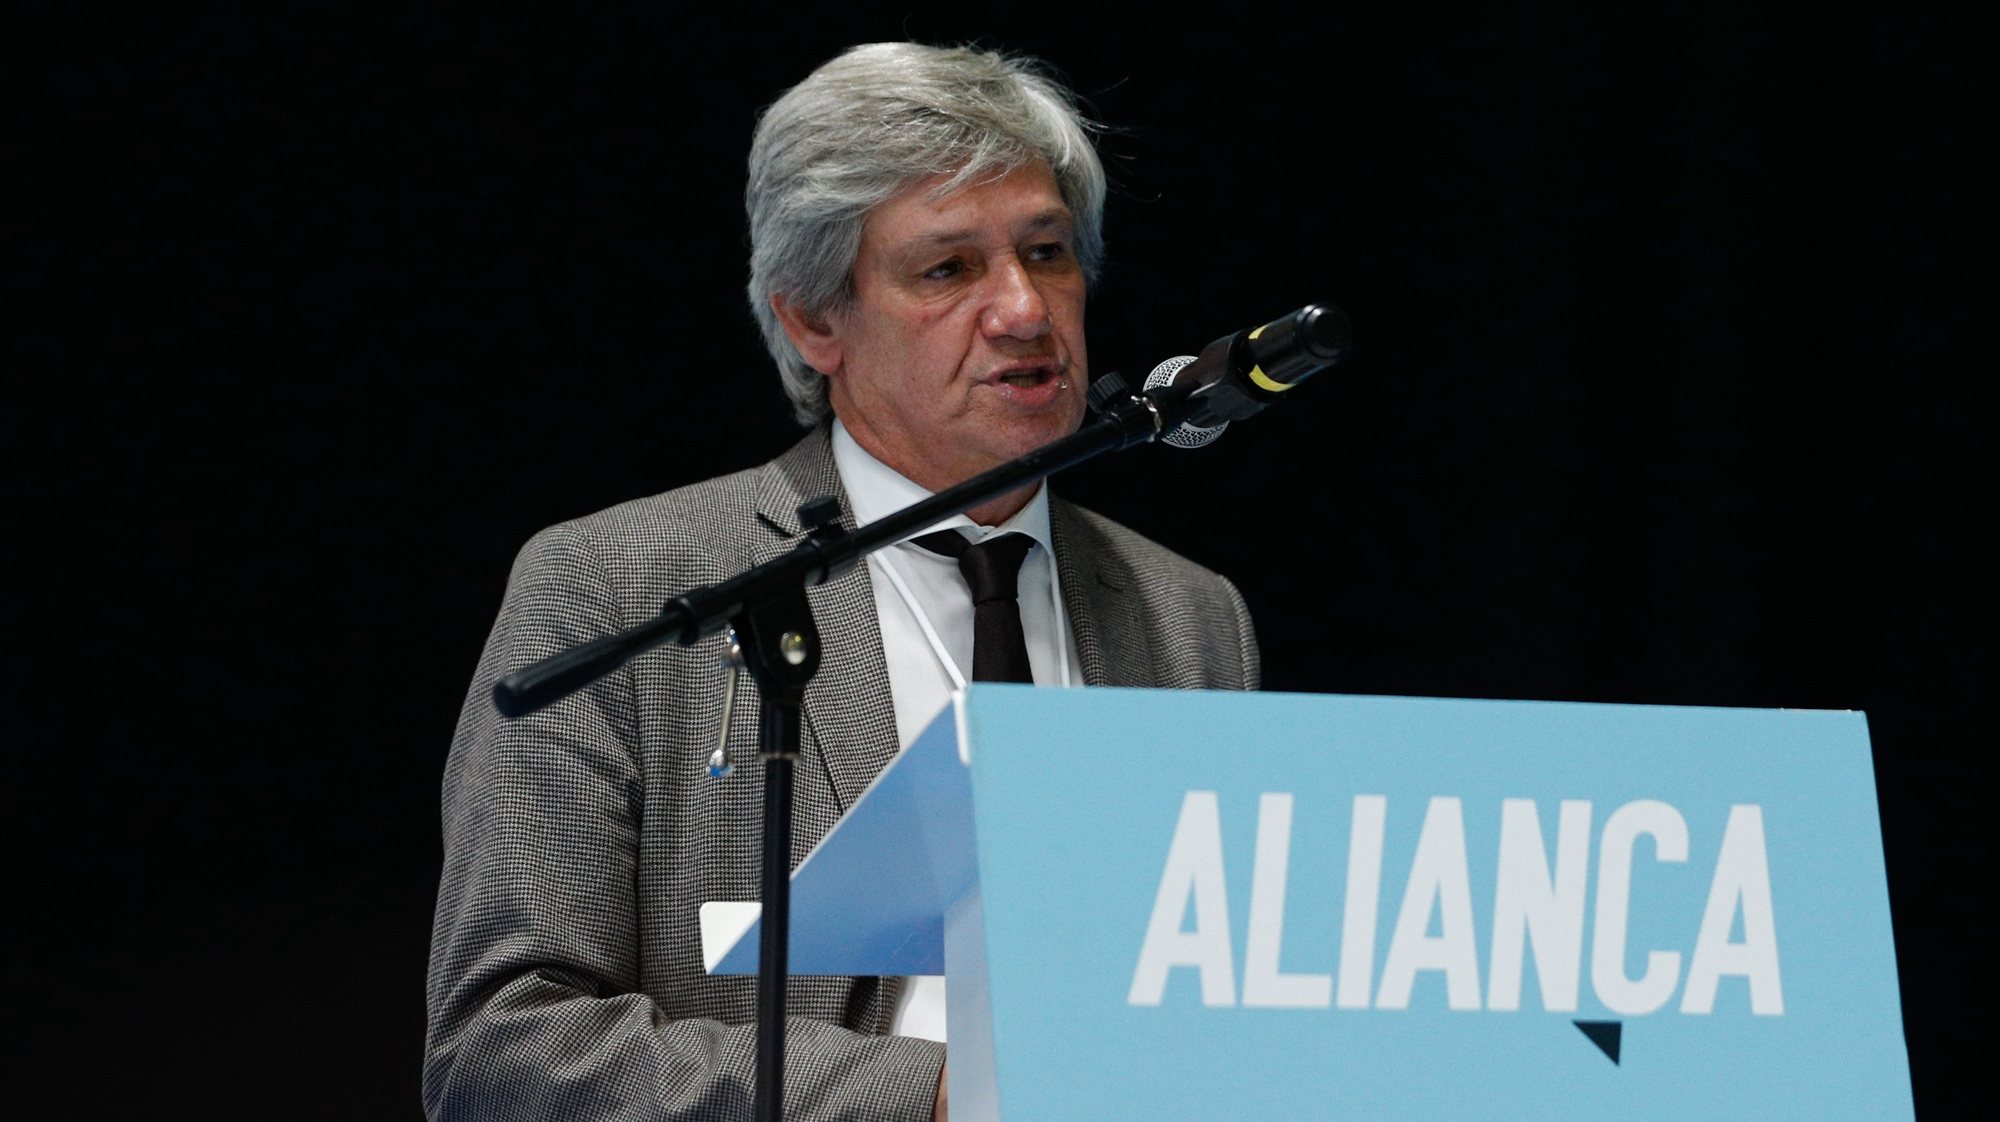 O presidente eleito do partido Aliança, Paulo Bento, discursa  durante o encerramento do II Congresso Nacional, que decorreu em Torres Vedras, 27 de setembro de 2020. ANTÓNIO COTRIM/LUSA